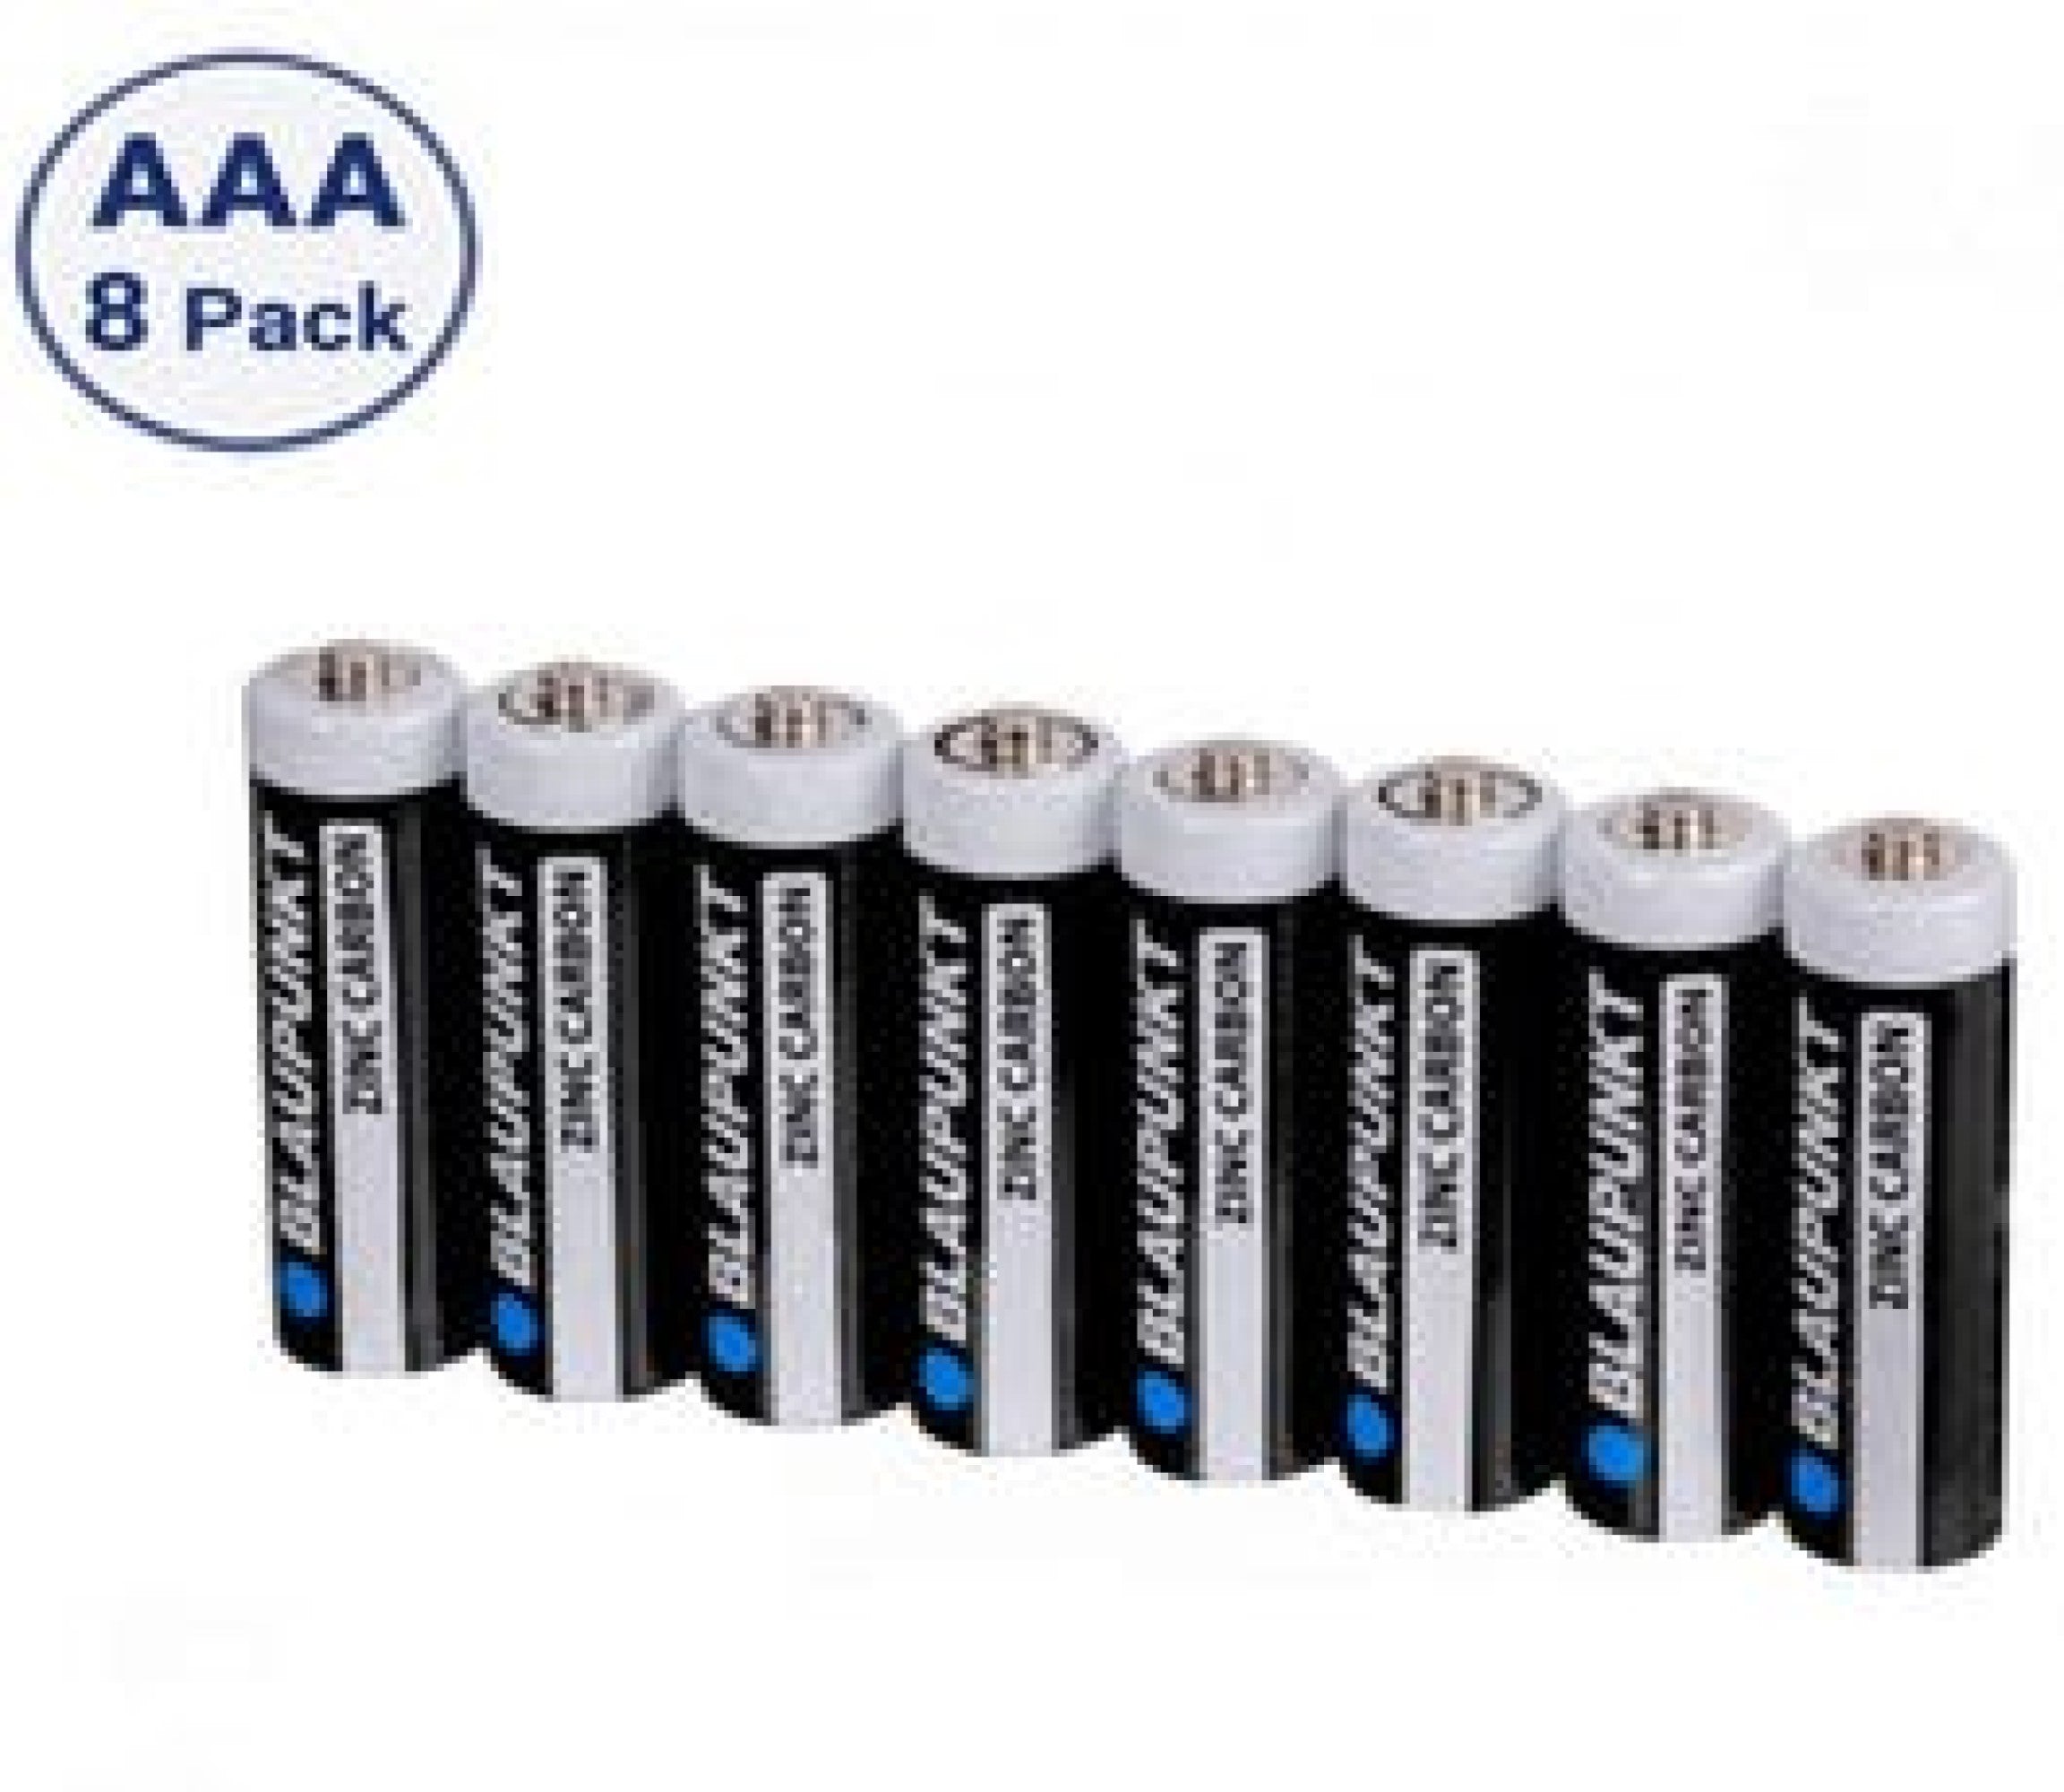 Blaupunkt Zinc Carbon AAA 8 pack Batteries in Shrink Wrap 1.5 Volt